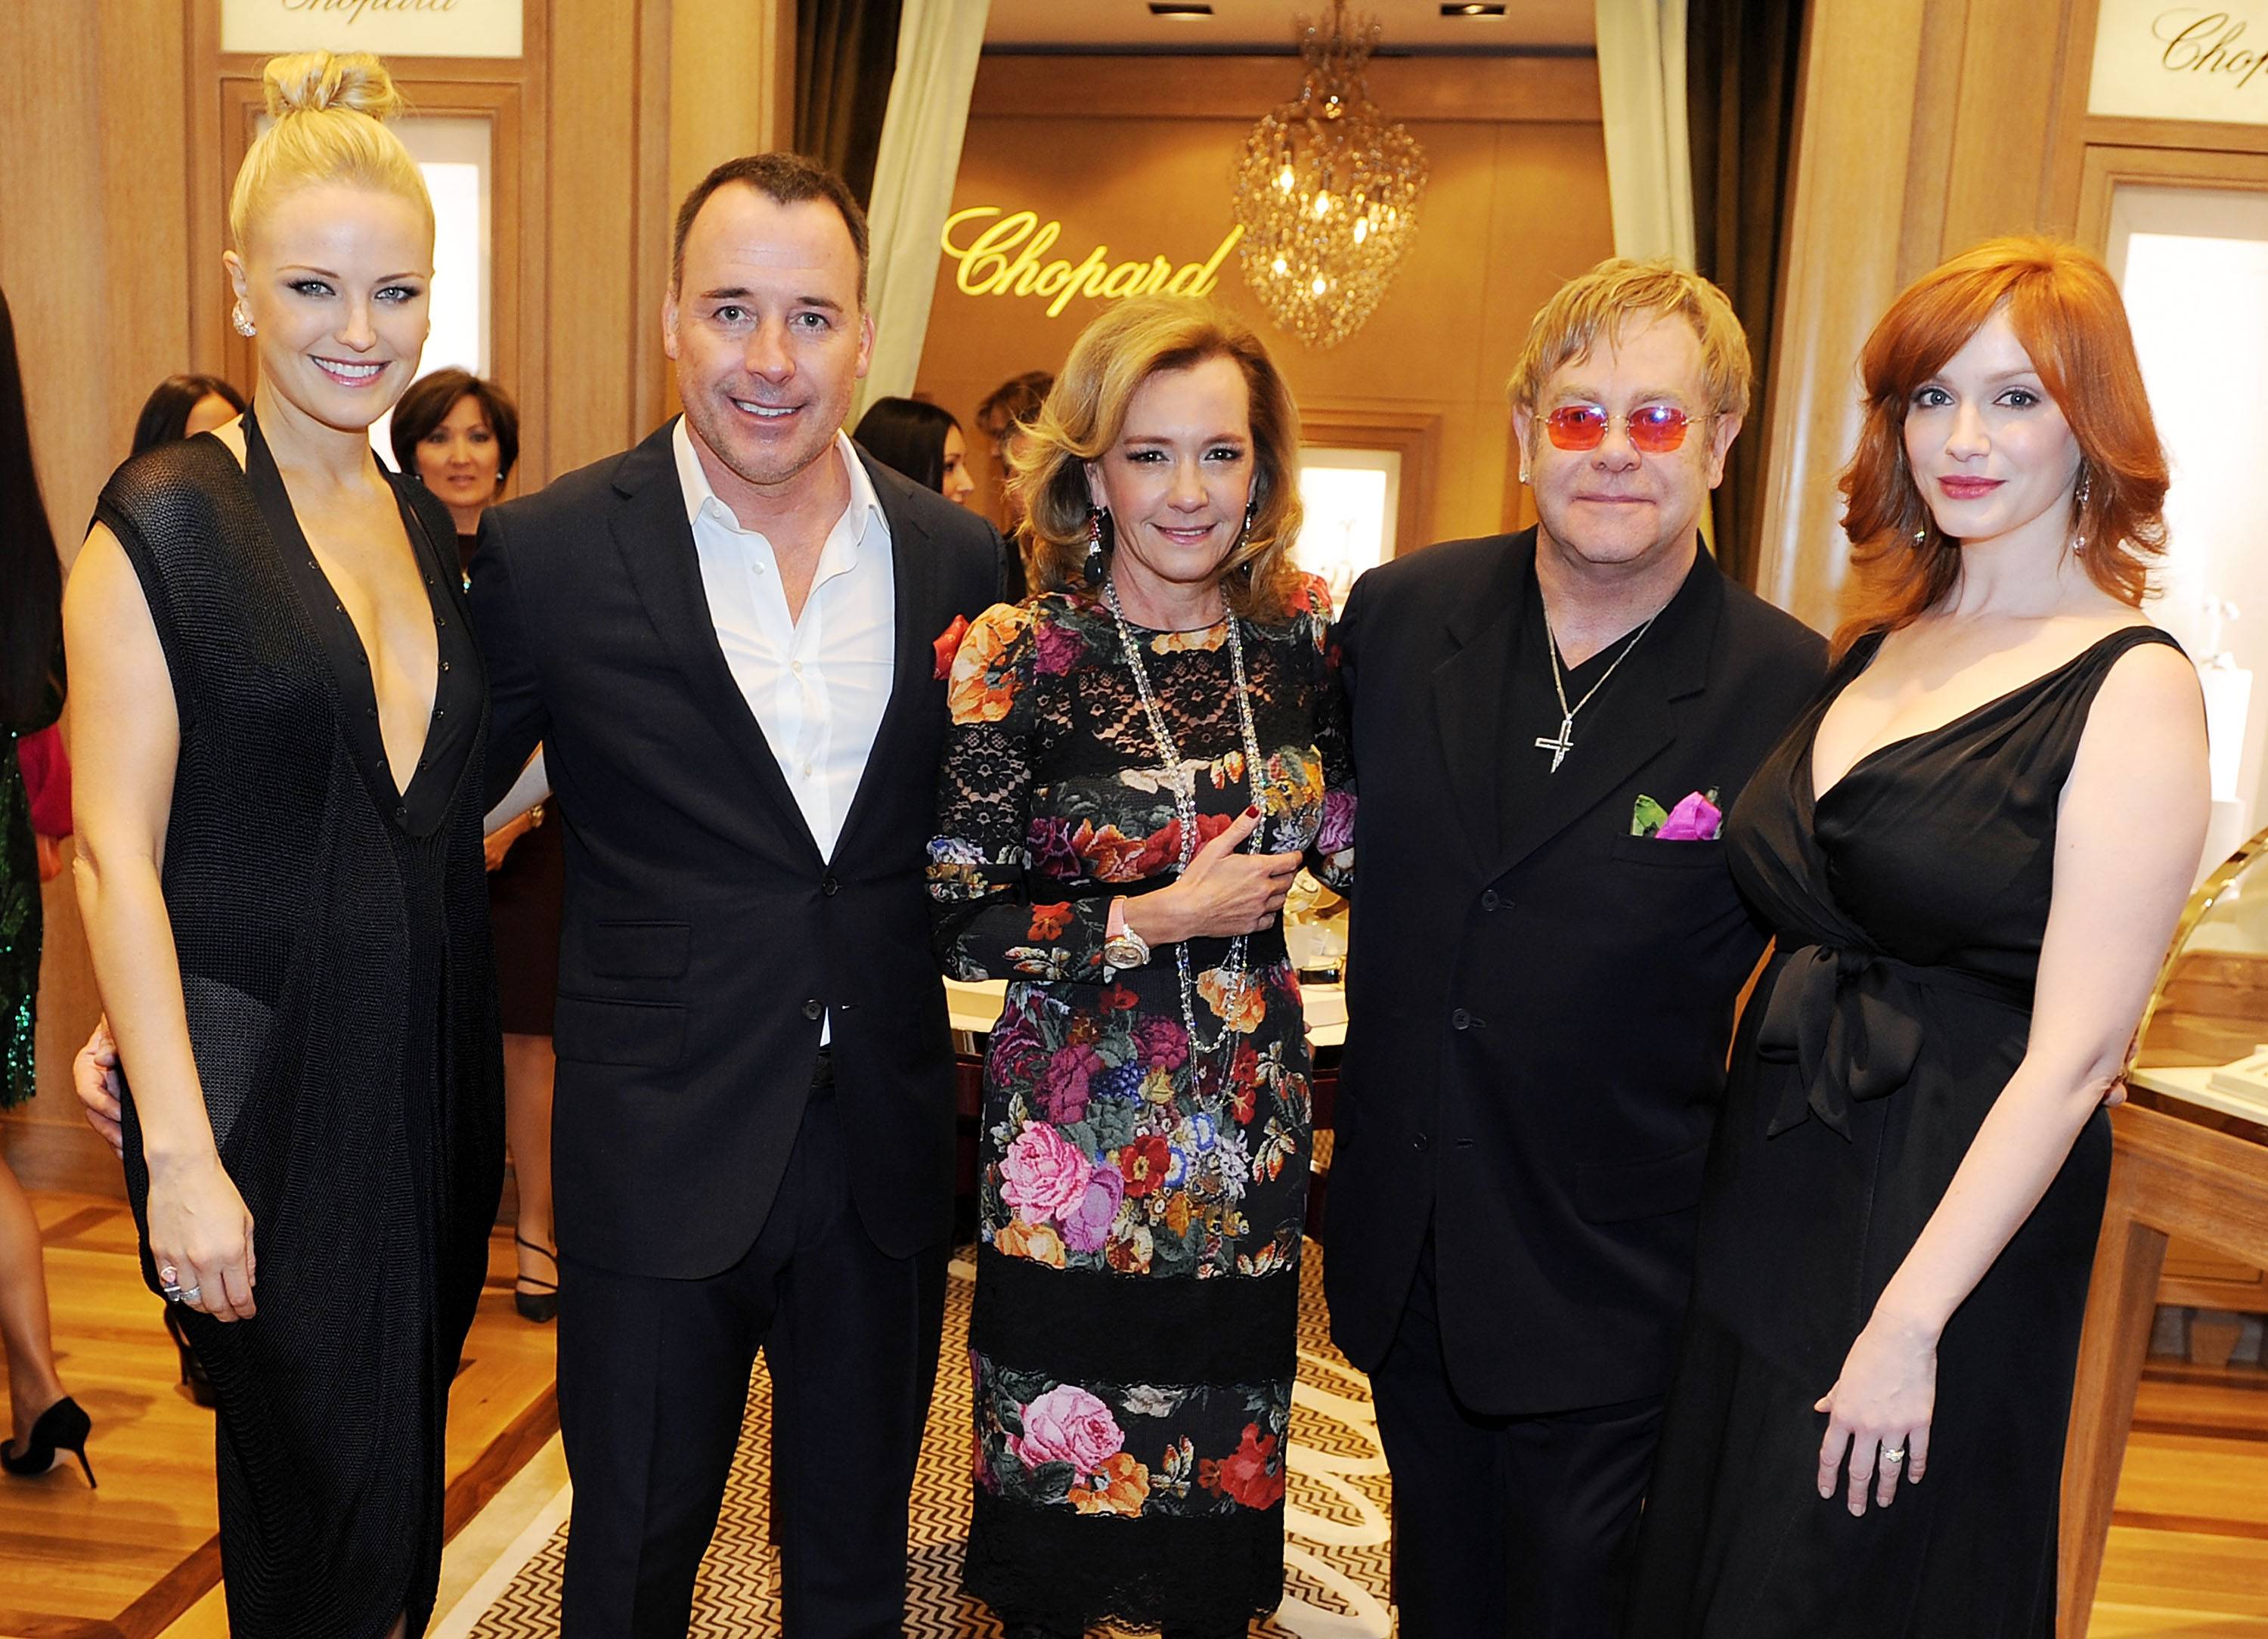 Chopped Grand Opening At Wynn Las Vegas With Sir Elton John